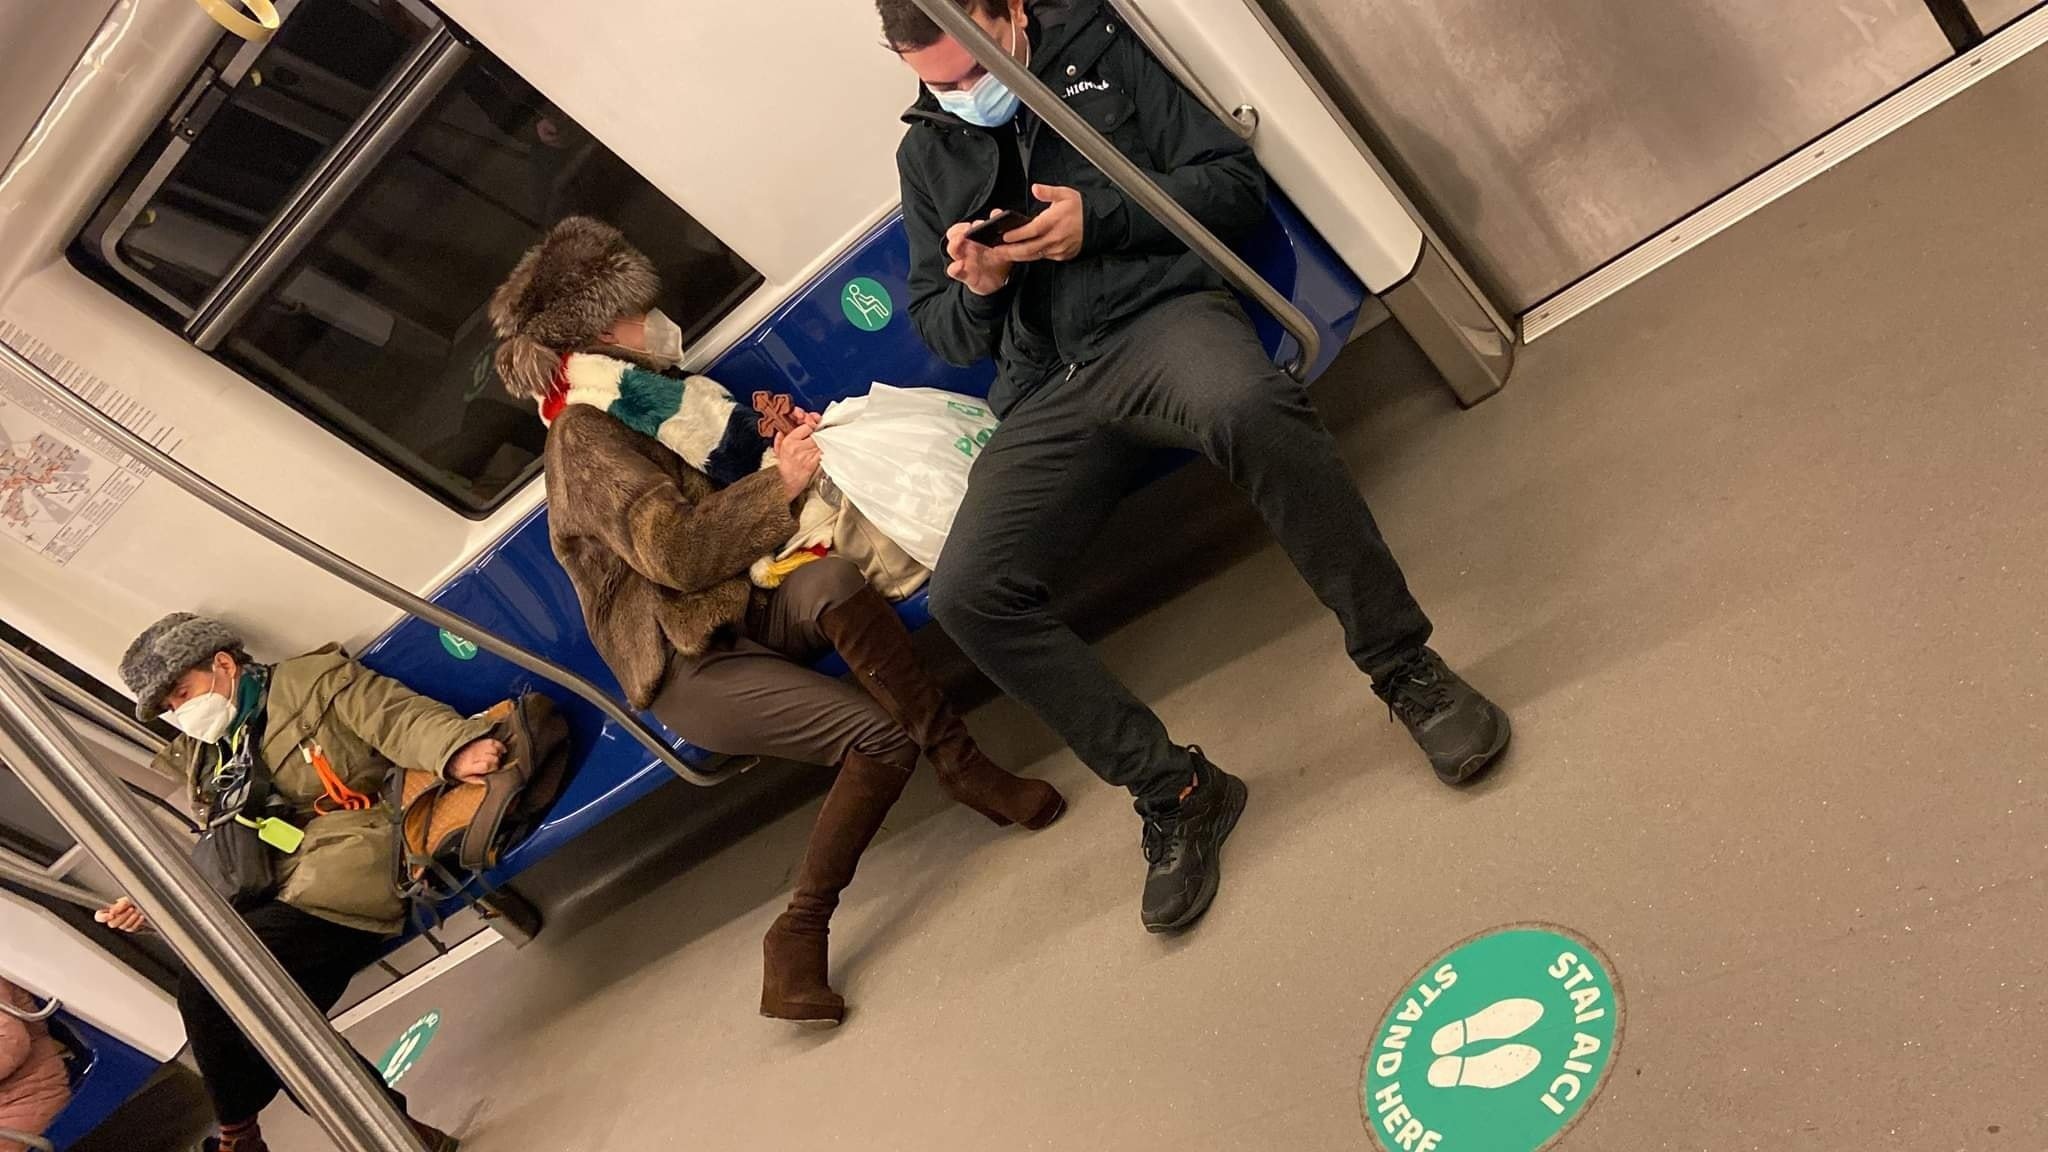  FOTO: O persoană din această poză a împins doi călători în fața metroului, în București. A fost reținută